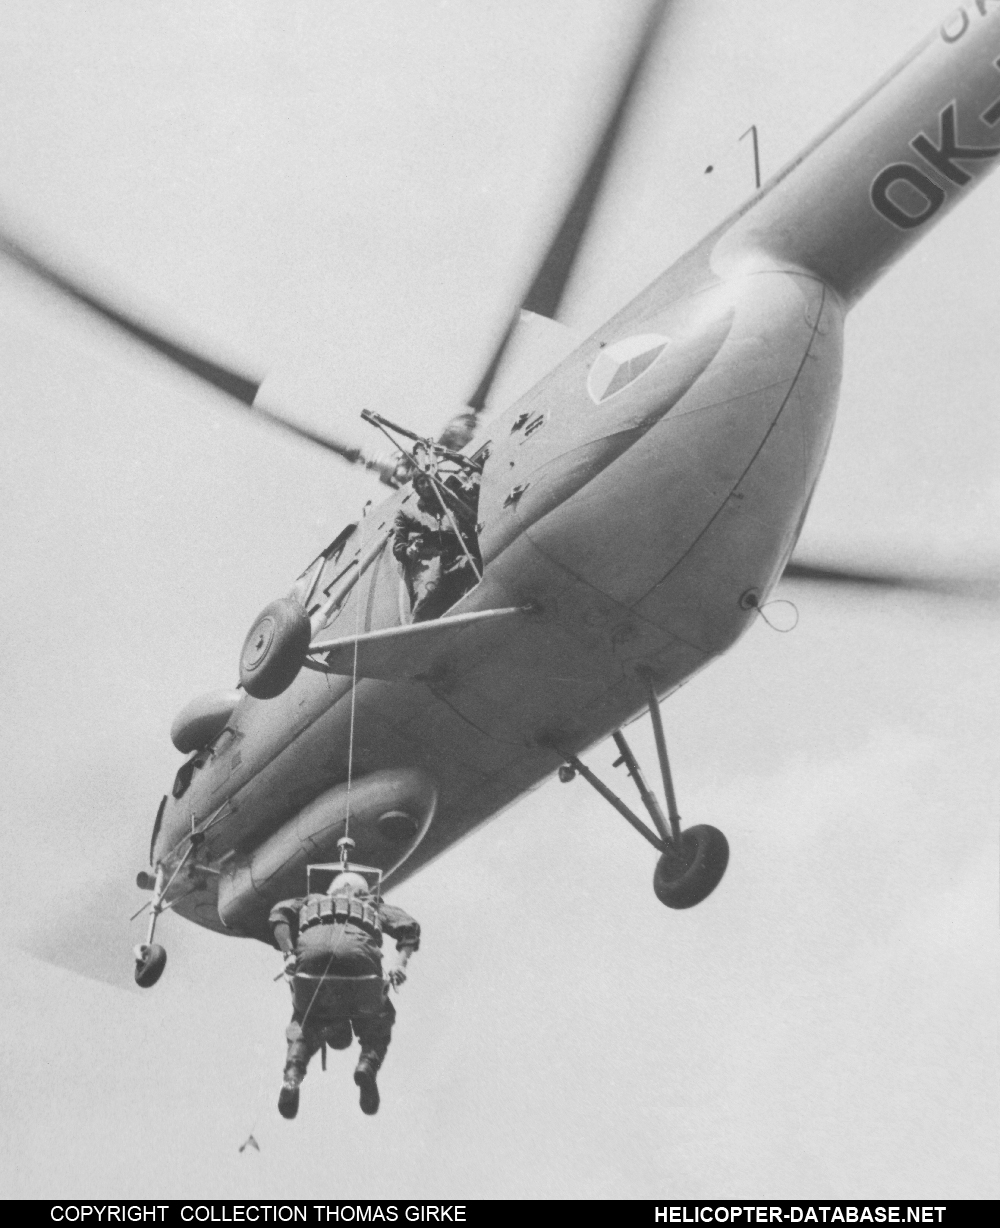 Mi-4   OK-BYN